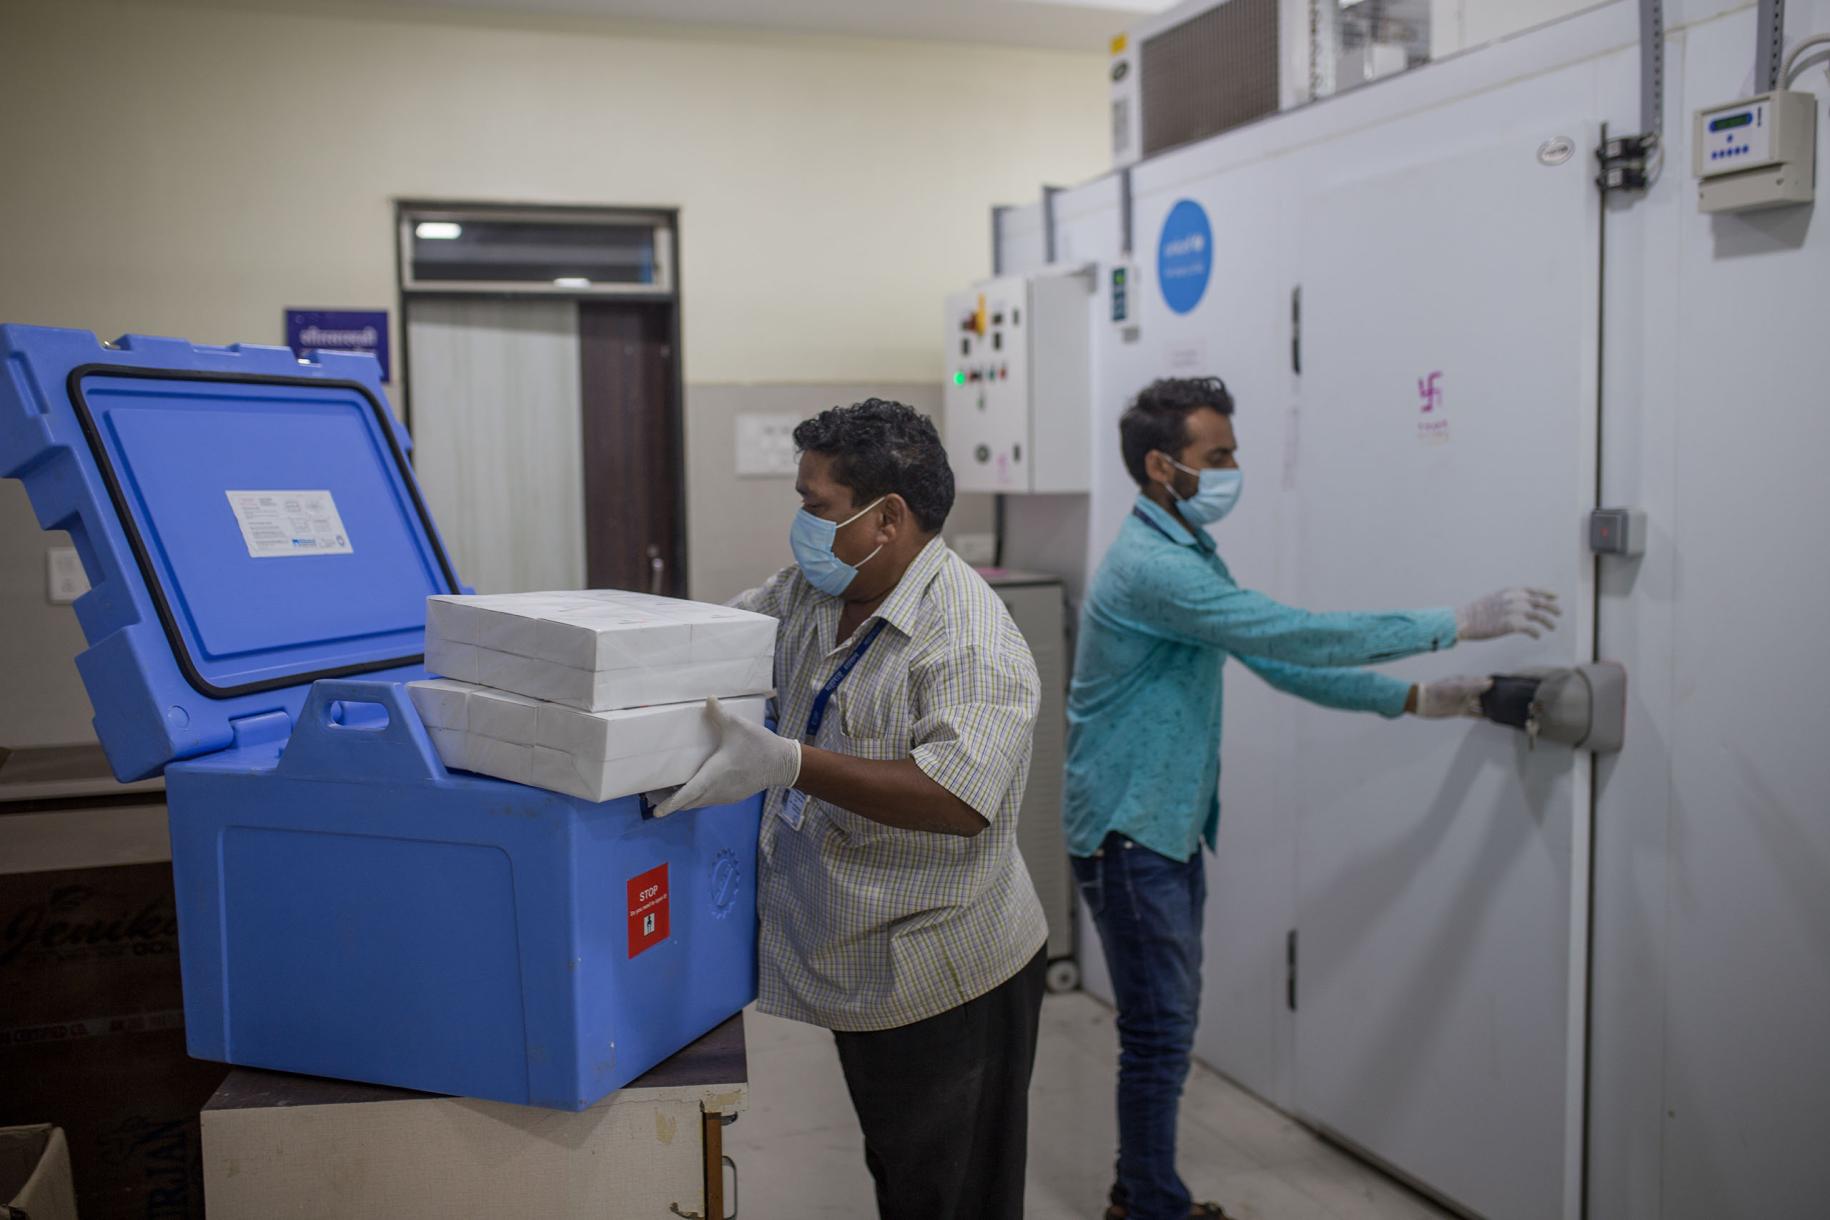 Au poste de la chaîne du froid du district de Maharashtra, le deuxième État le plus peuplé de l'Inde, deux employés d'État transfèrent des vaccins depuis des caisses de vaccins anti COVID-19 dans des chambres froides.